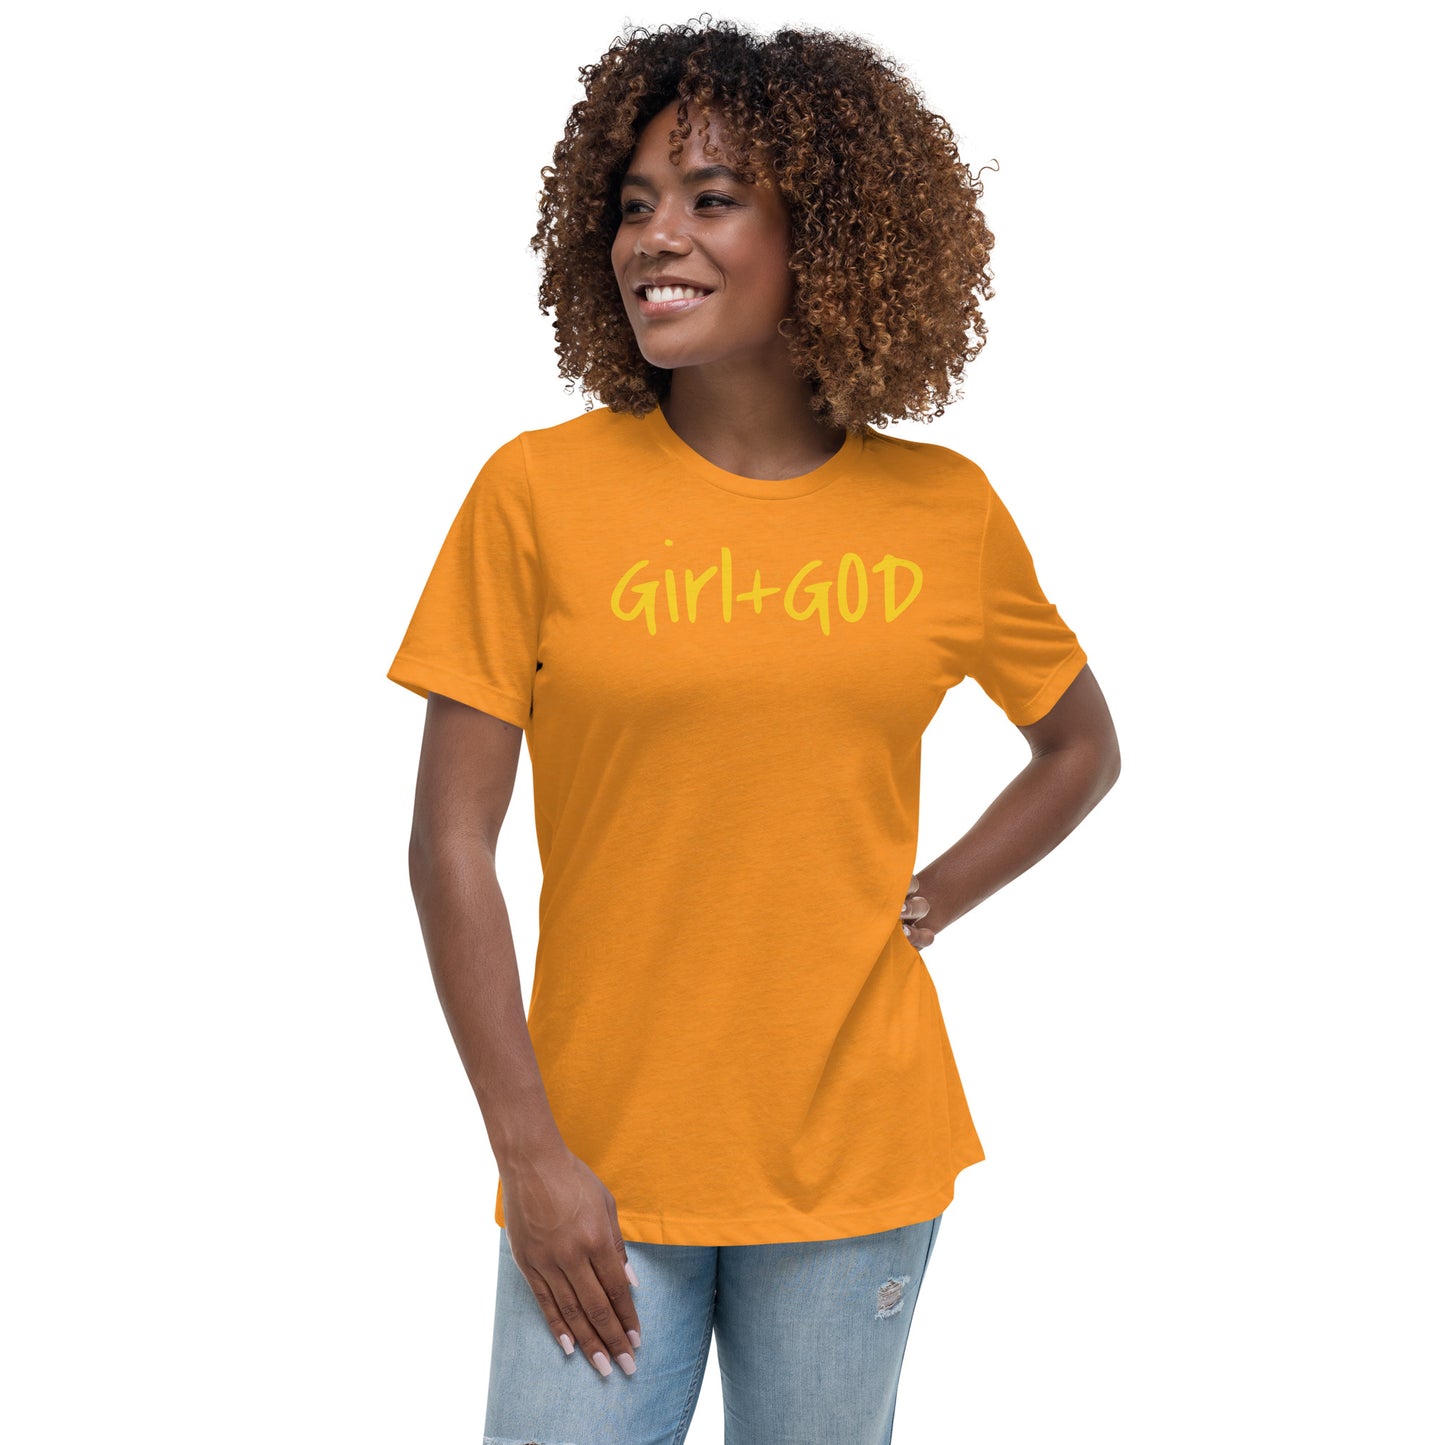 Girl + God Signature Women's Relaxed T-Shirt - Golden